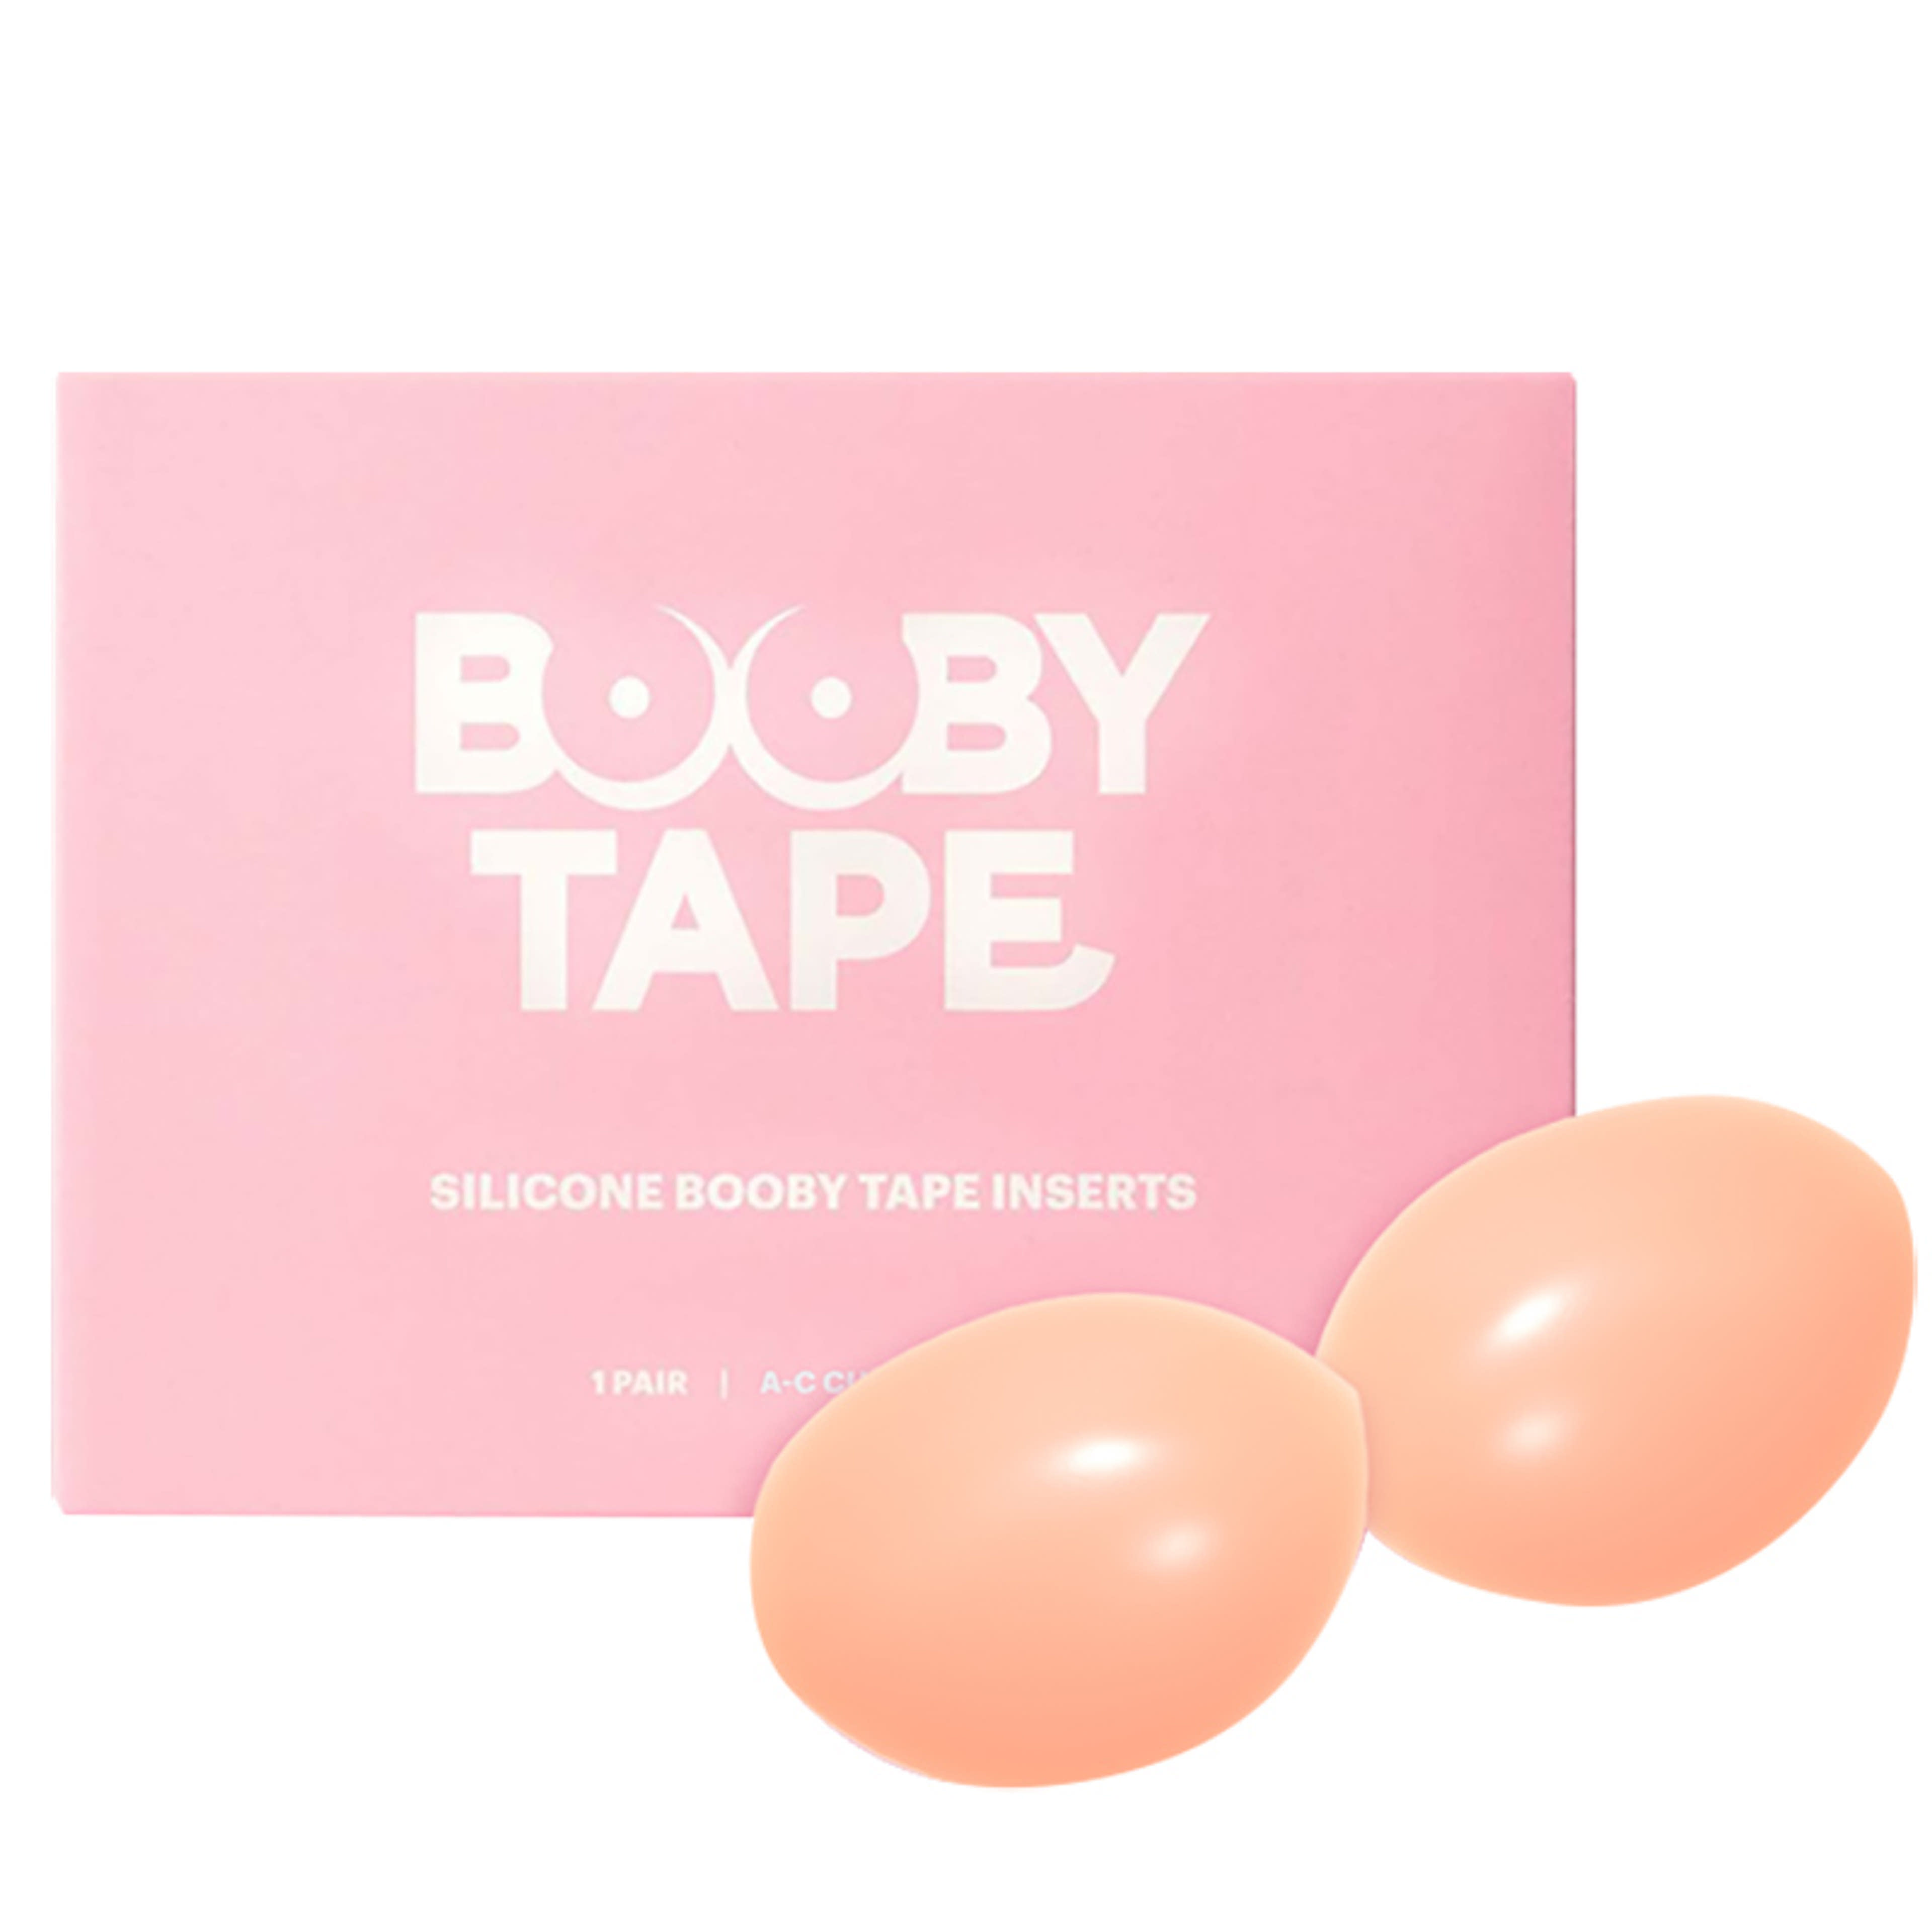 Booby Tape Push-Up szilikon melltartó betét (A-C) 1 pár - 1 db-2